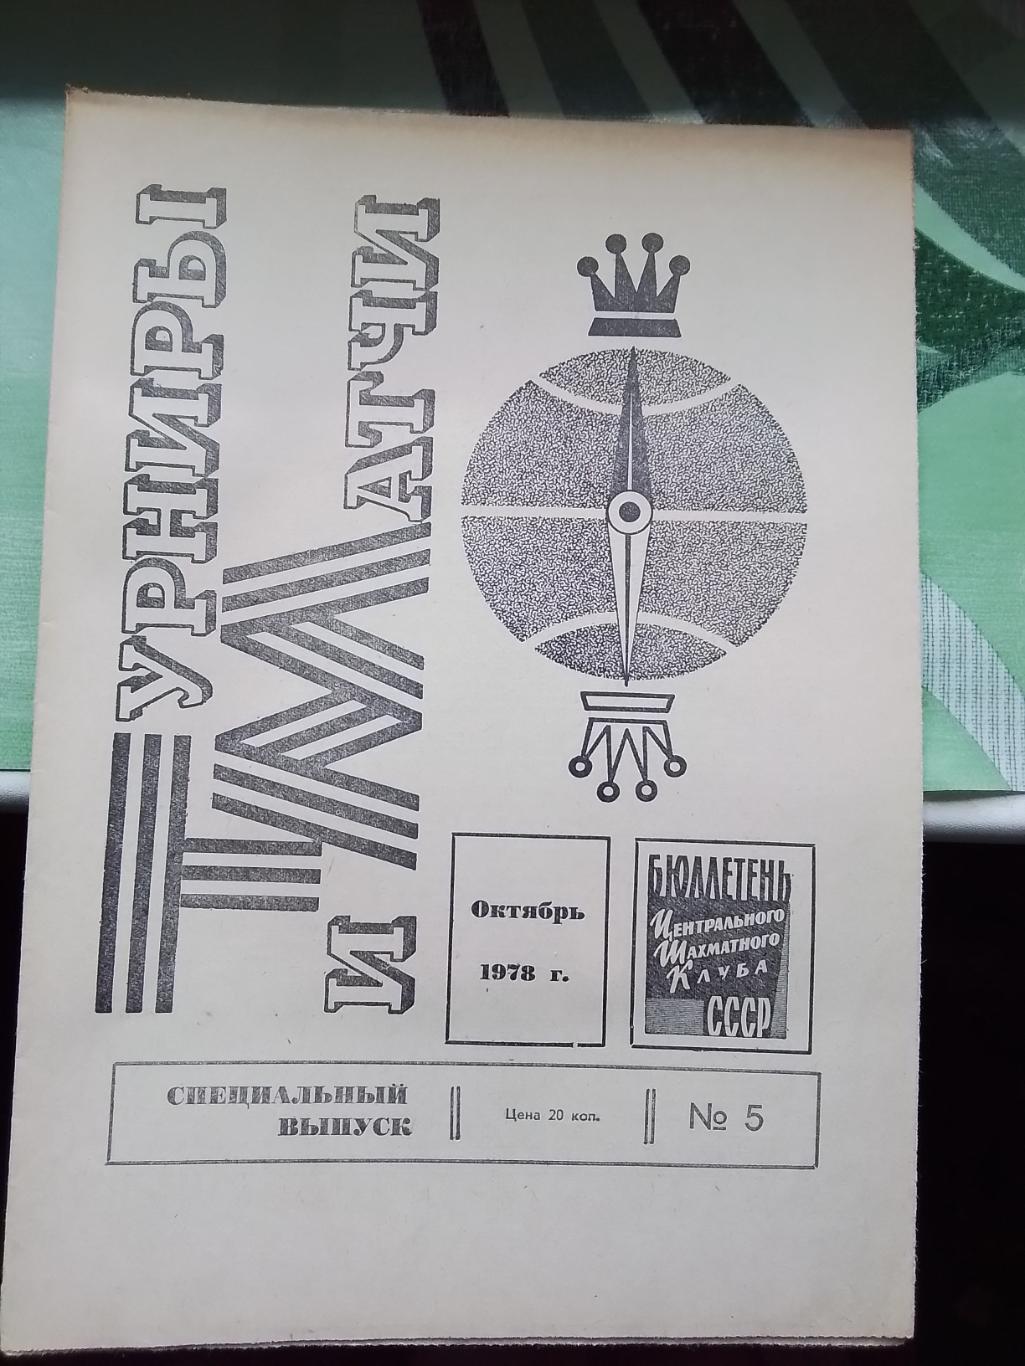 Газета Бюллетень Шахматного клуба СССР Спецвыпуск 5 Турниры и матчи Октябрь 1978